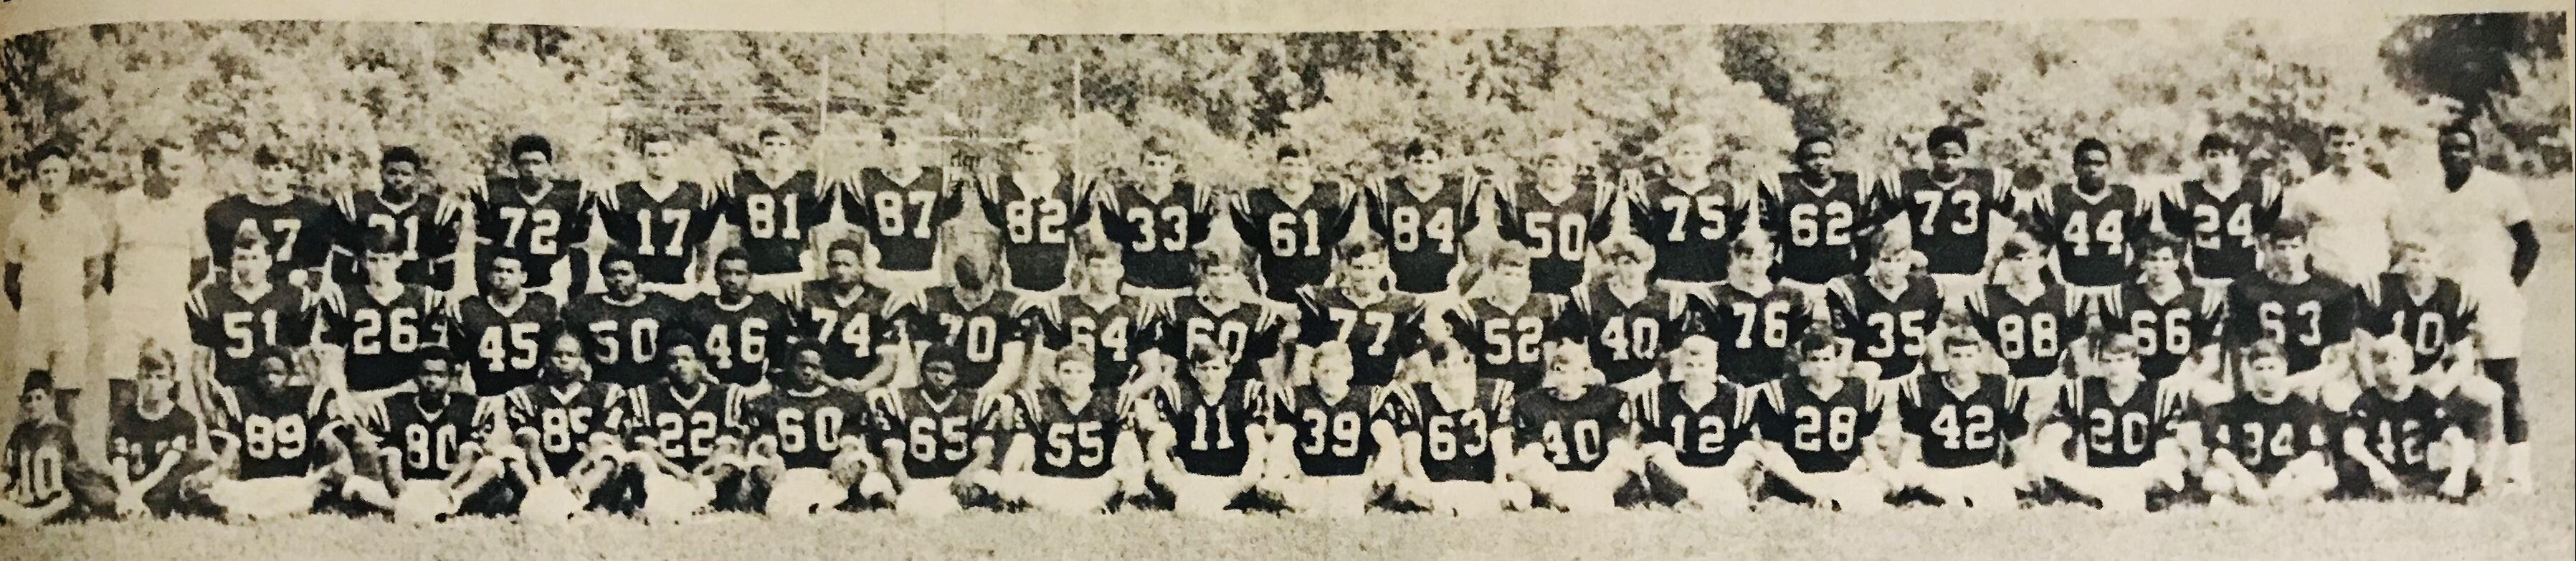 1970 SHS Football Team